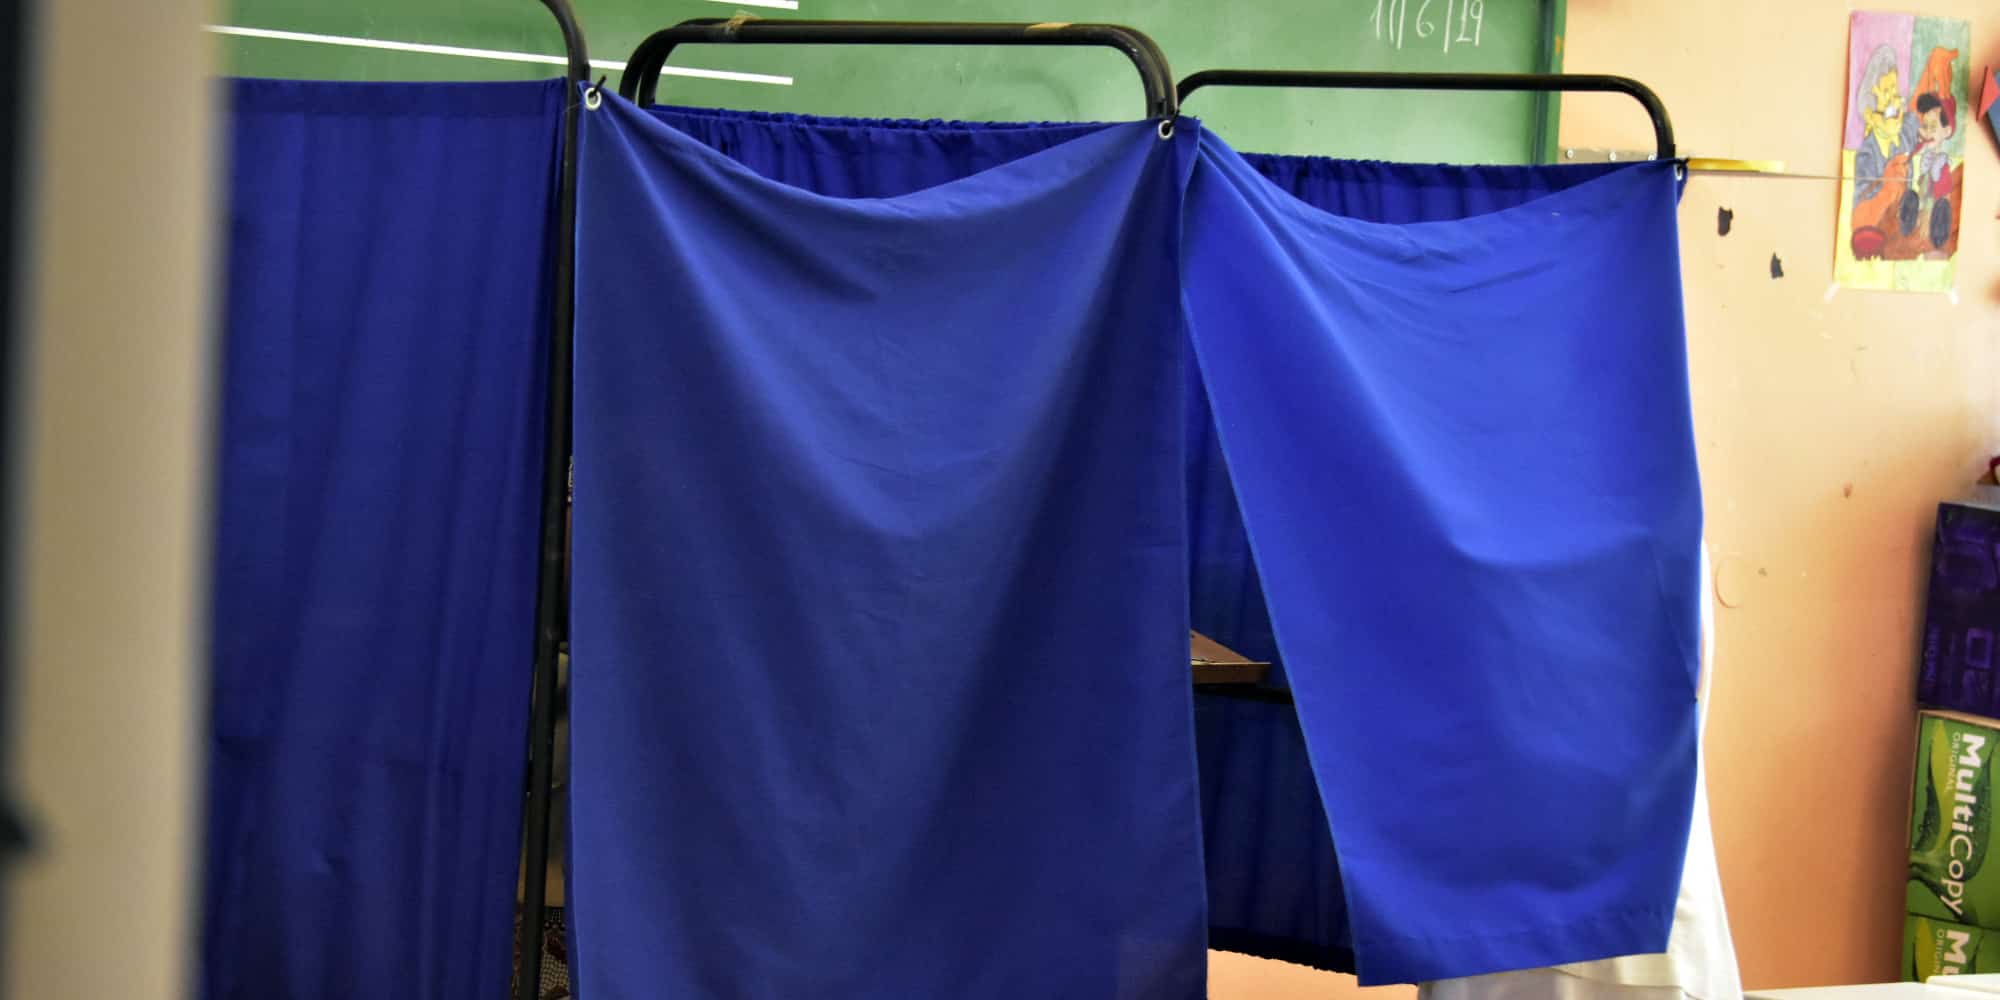 Μάθετε πρώτοι τα αποτελέσματα των εκλογών στο Ηράκλειο